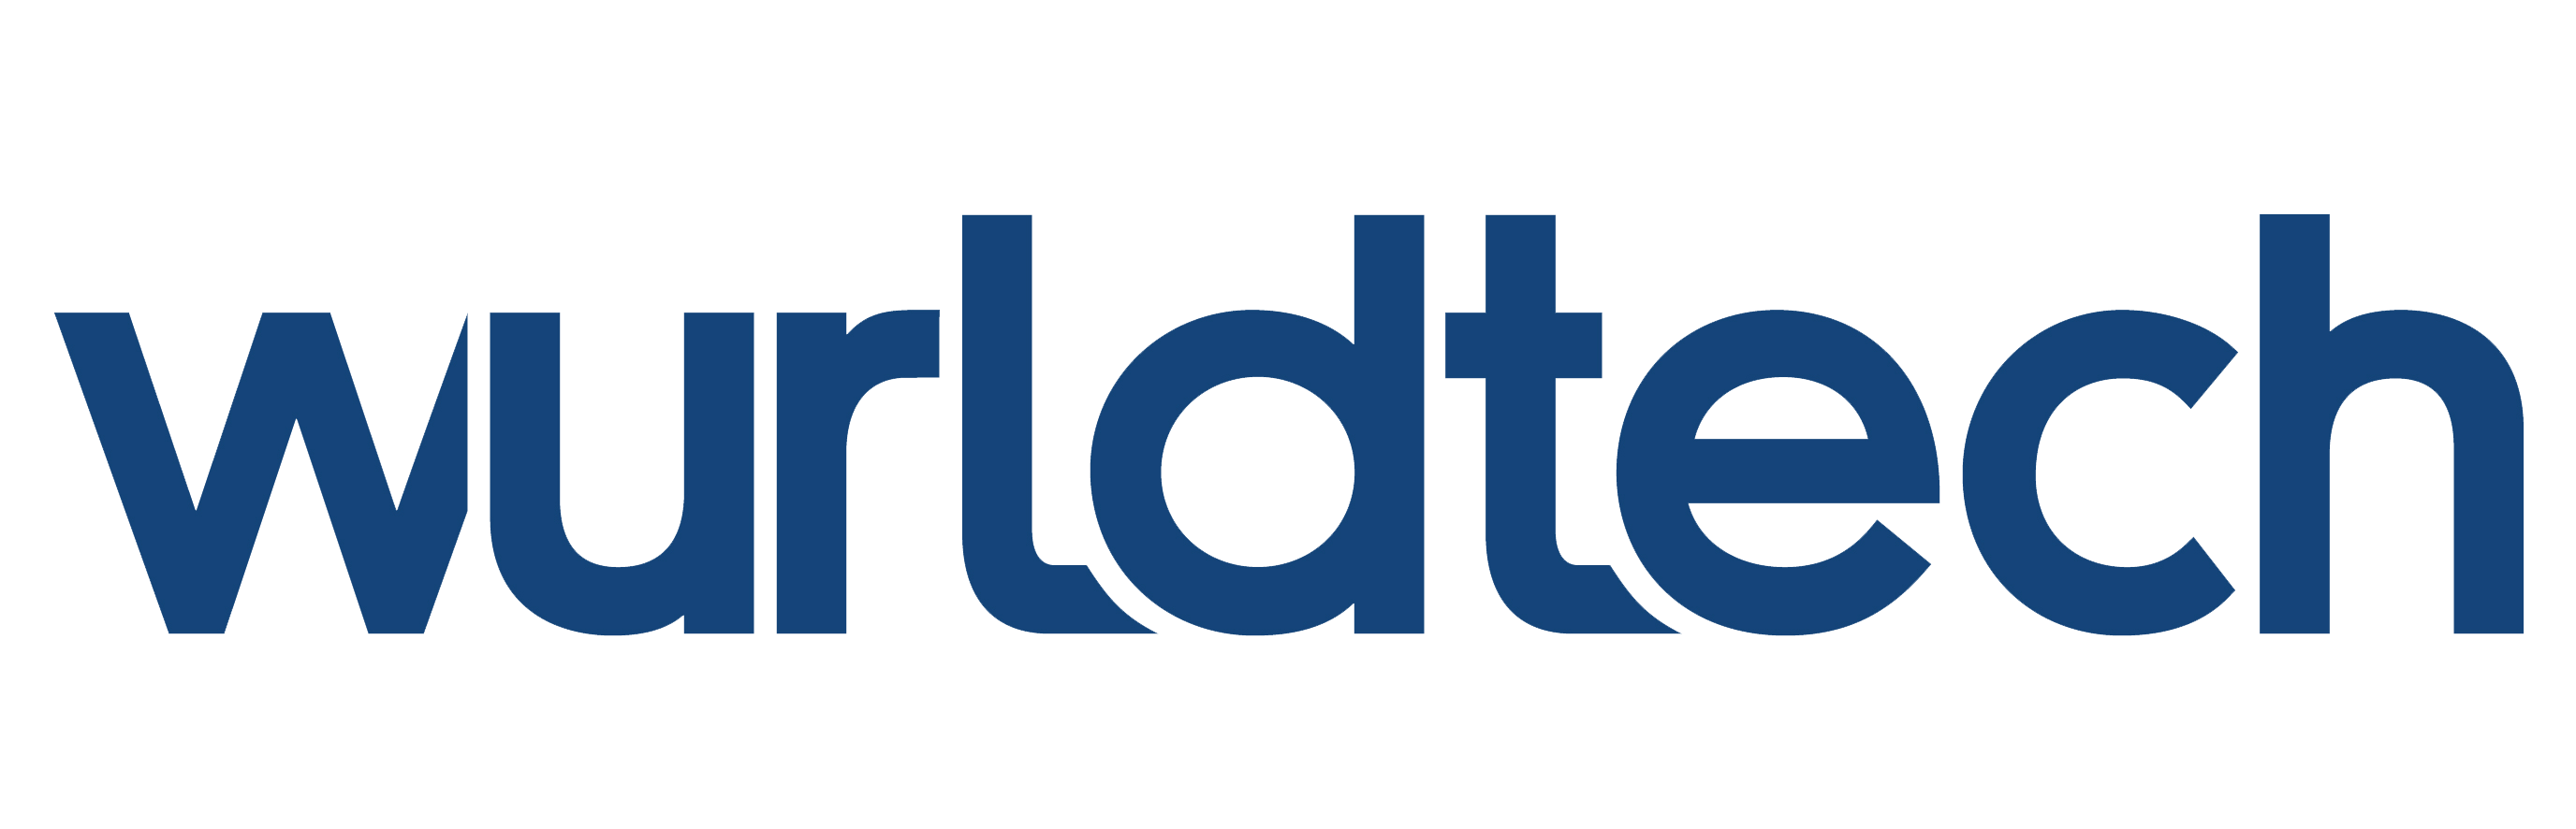 WurldTech-logo